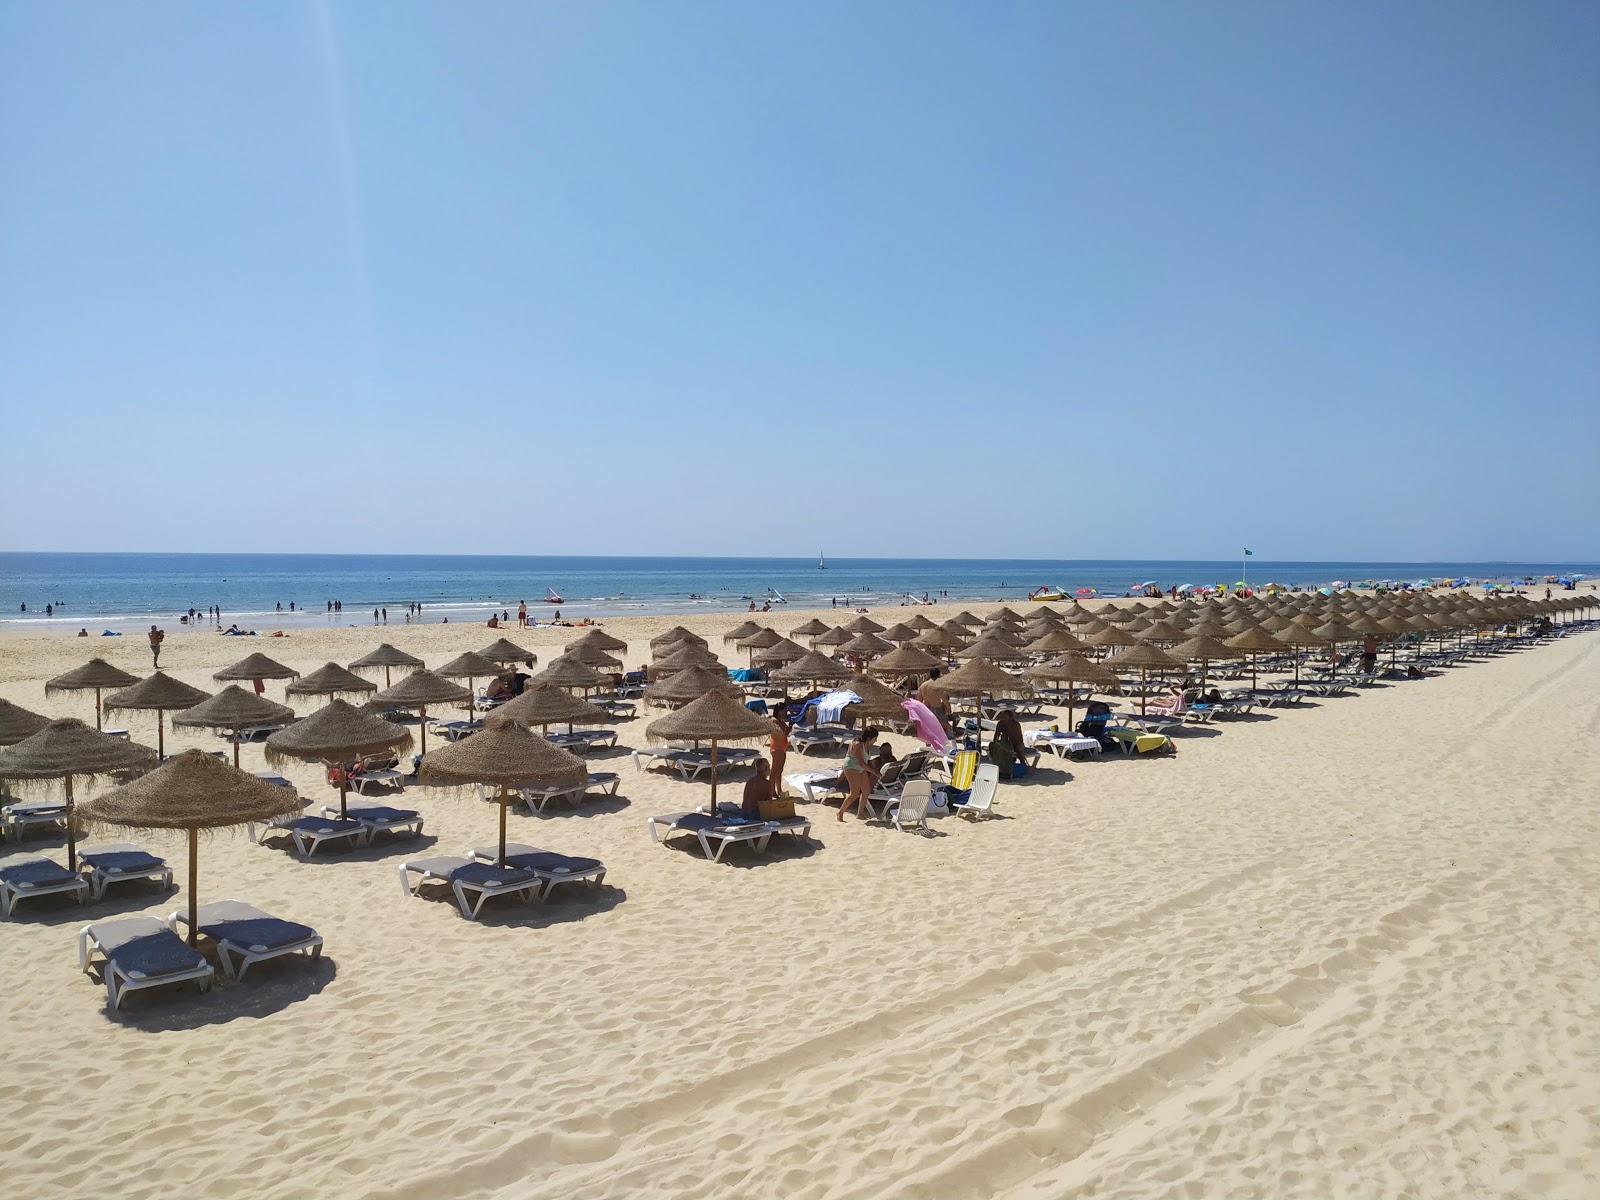 Verde Plajı'in fotoğrafı parlak ince kum yüzey ile